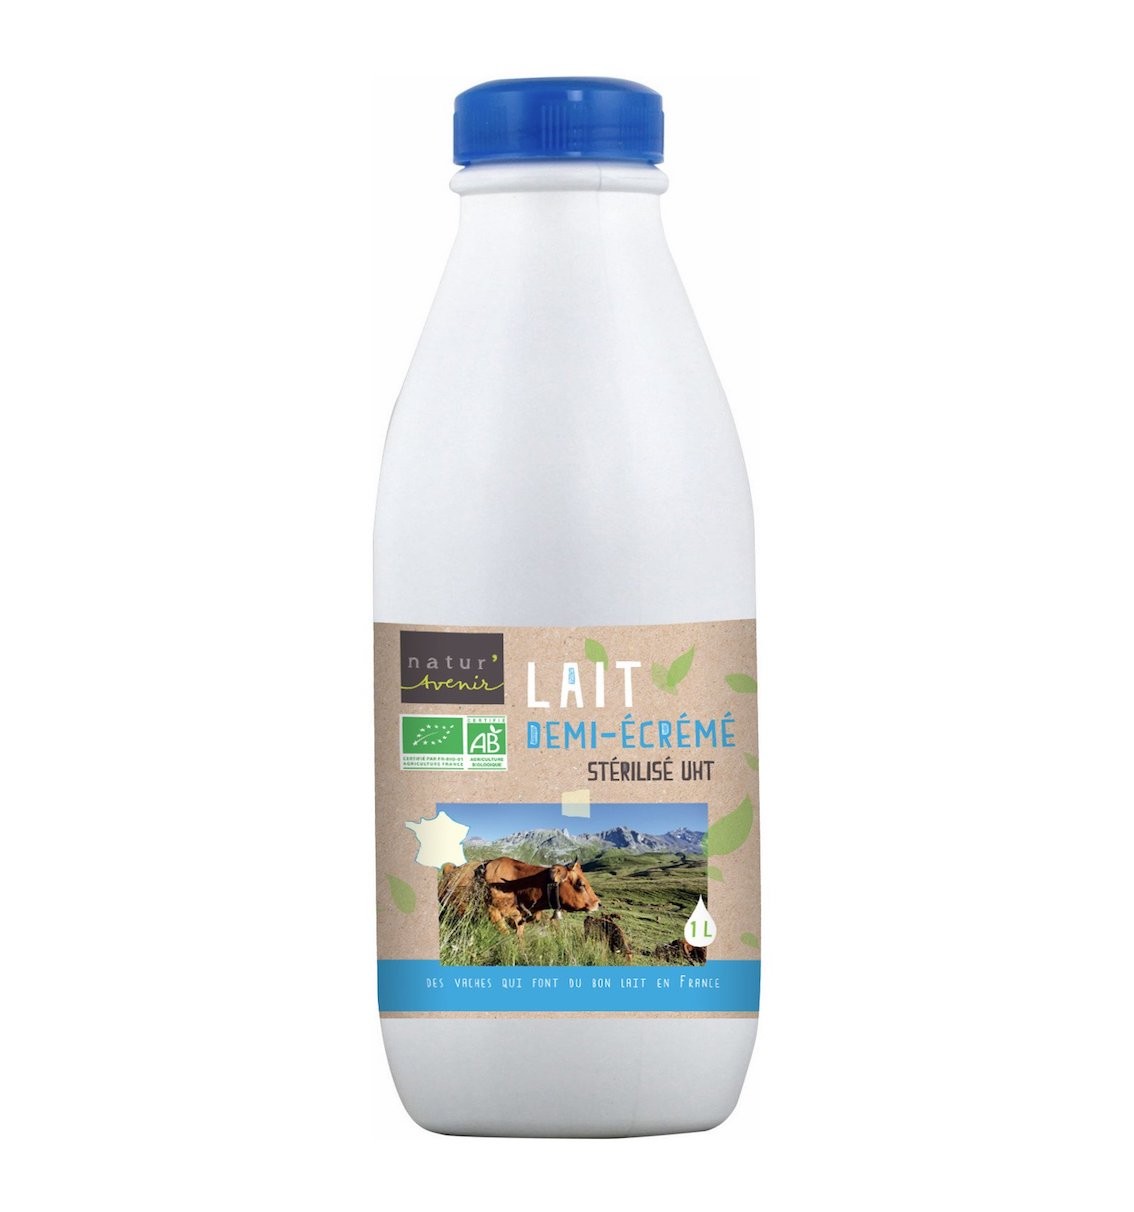 https://www.relaisbio.fr/4693/lait-demi-ecreme-sterilise-uht-bio-bouteille-1l-natur-avenir.jpg